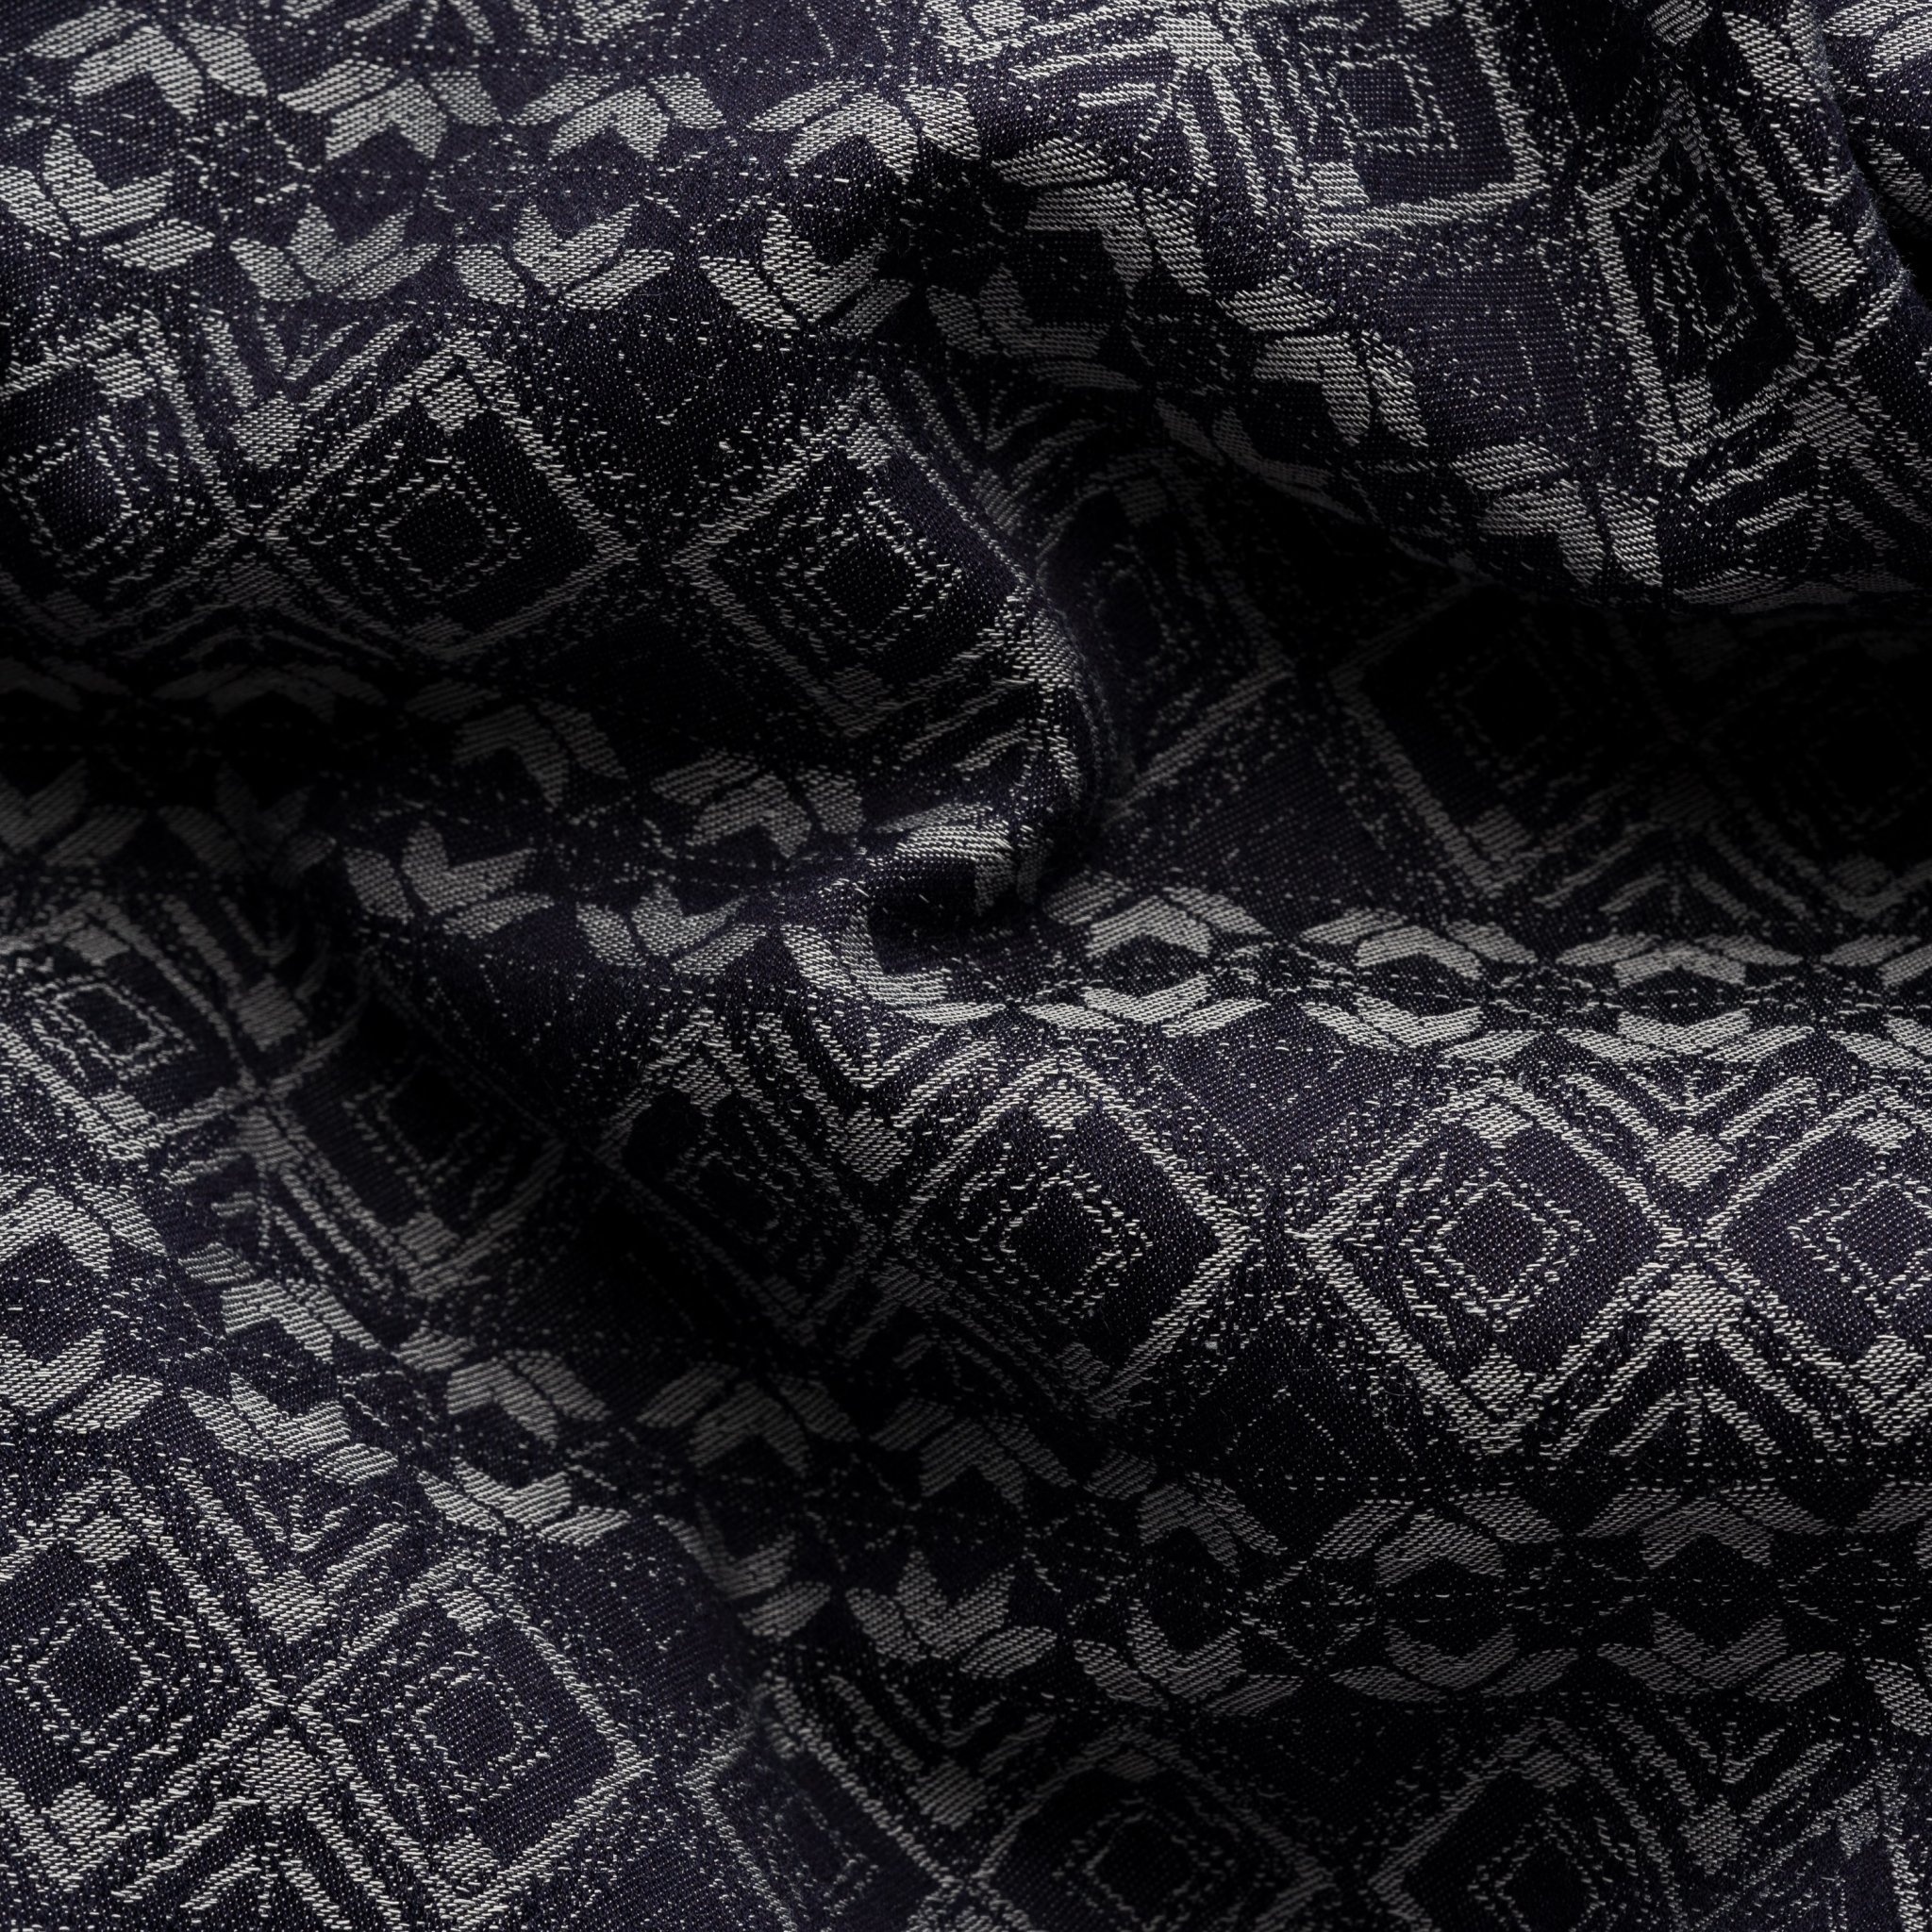 Eton Blue Geometric Jacquard Denim Resort Shirt